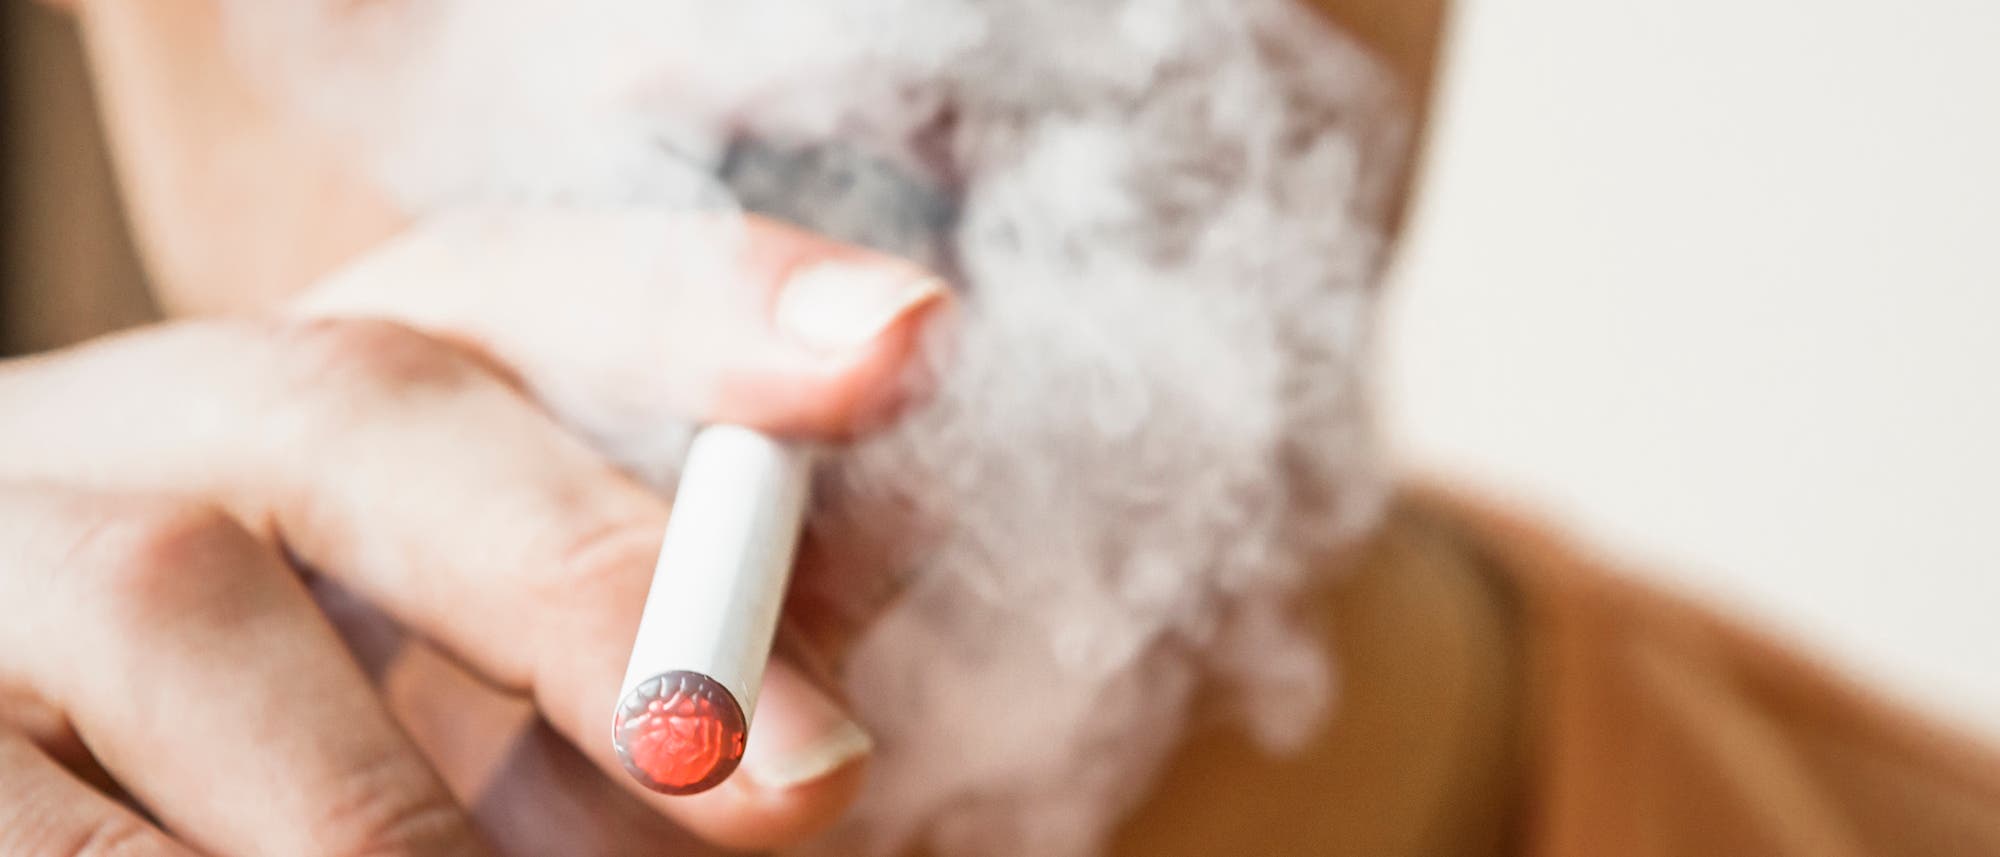 Erleichtern E-Zigaretten den Einstieg in die Nikotinsucht?